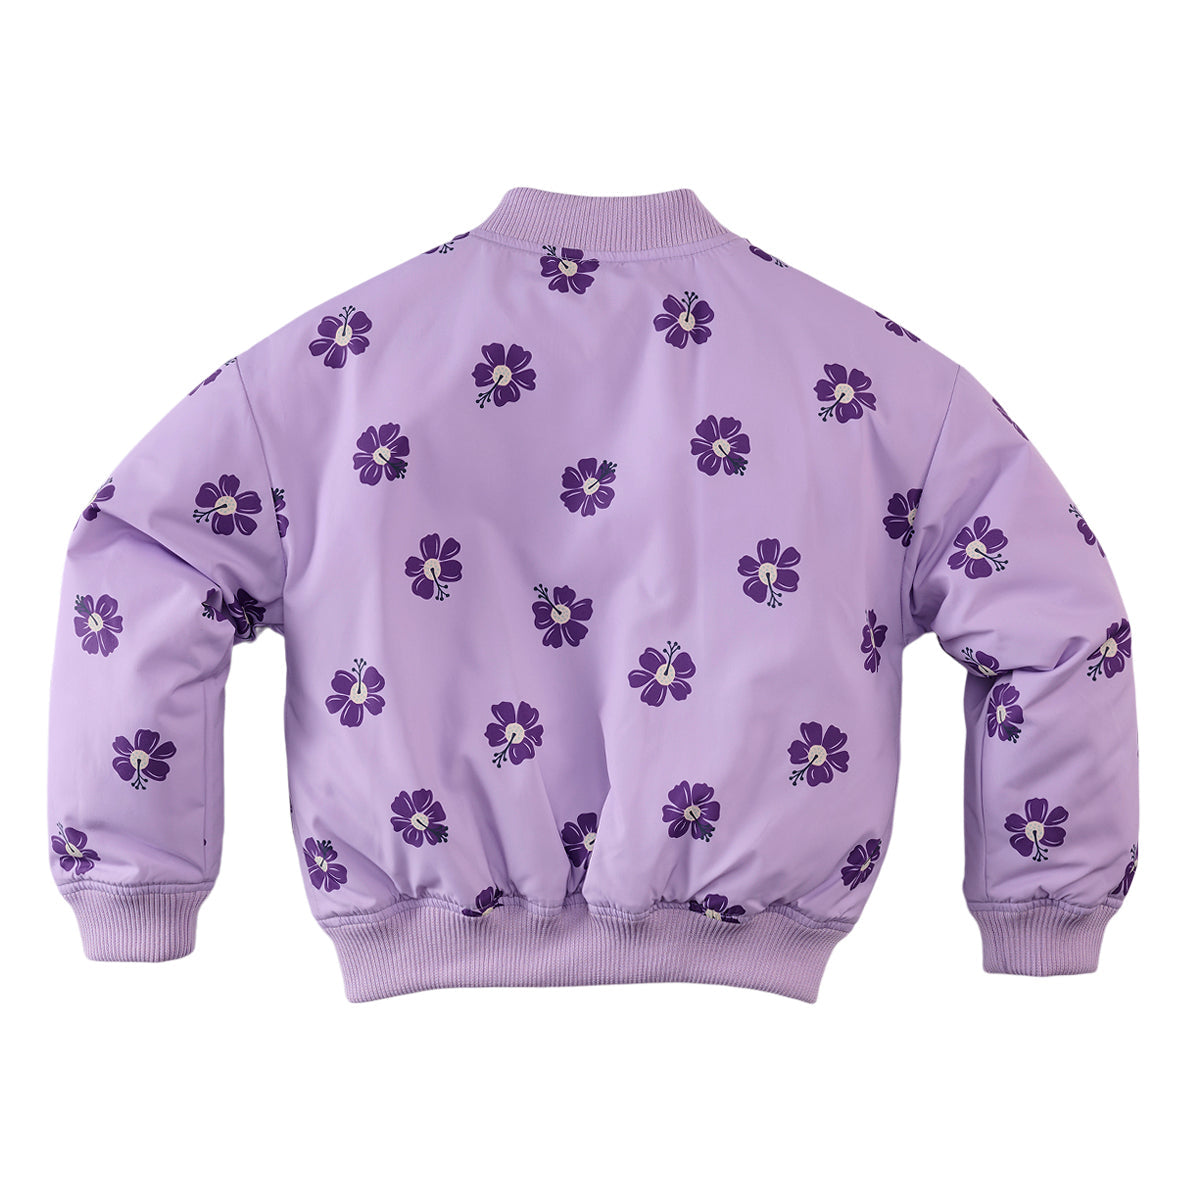 Meisjes Summer jacket Calista van Z8 in de kleur Lavender frost/AOP in maat 140-146.